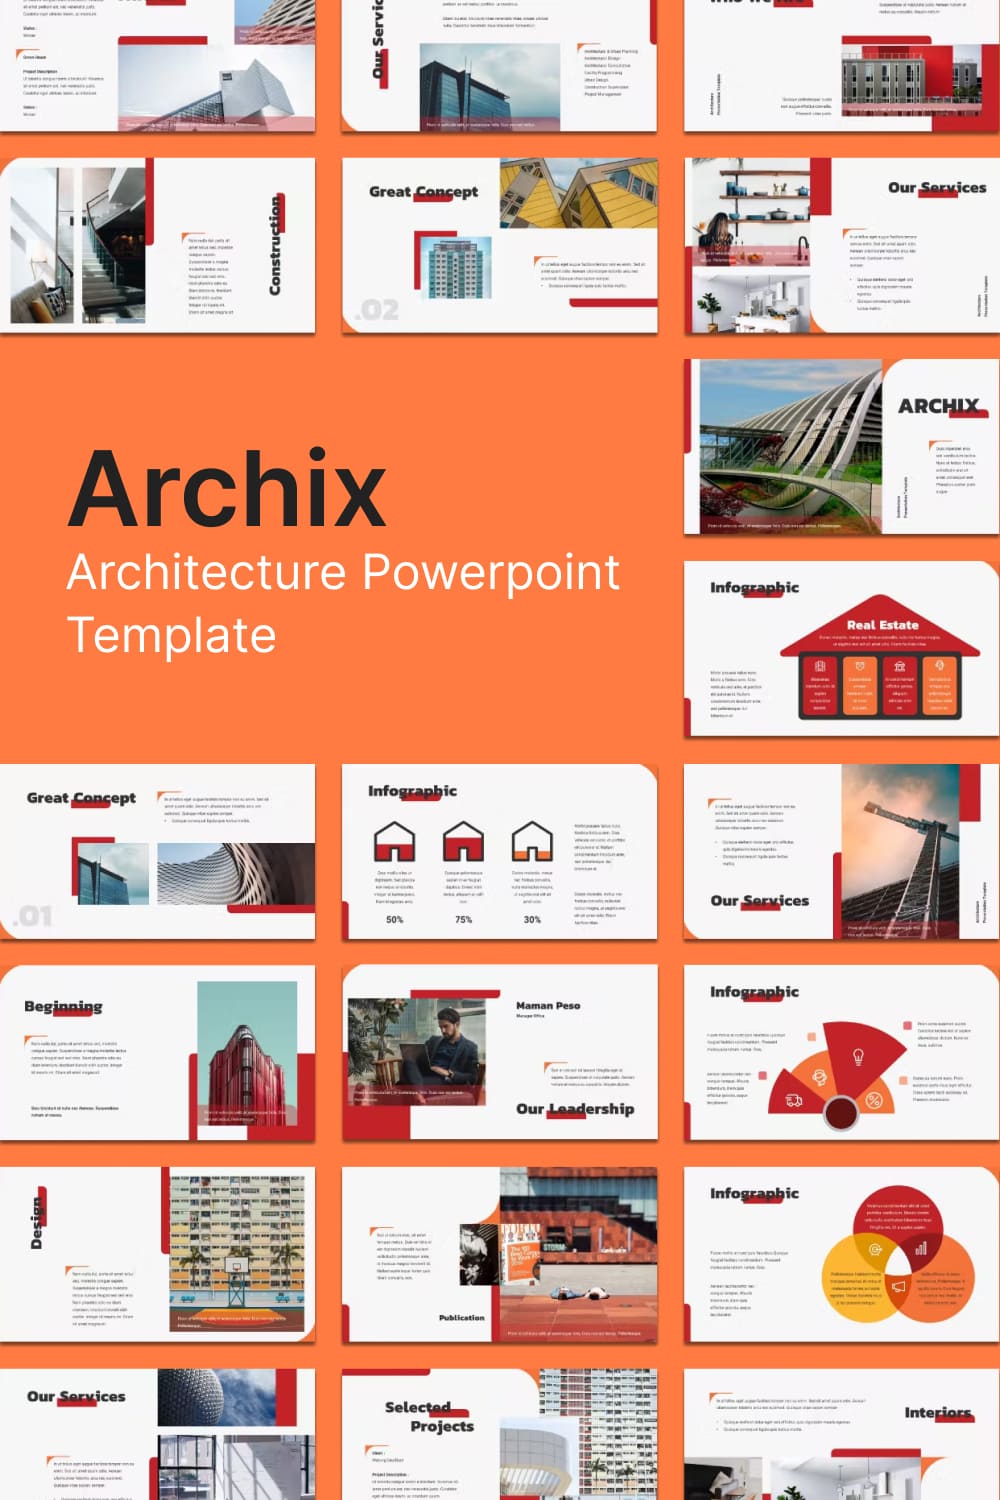 archix architecture powerpoint template 03